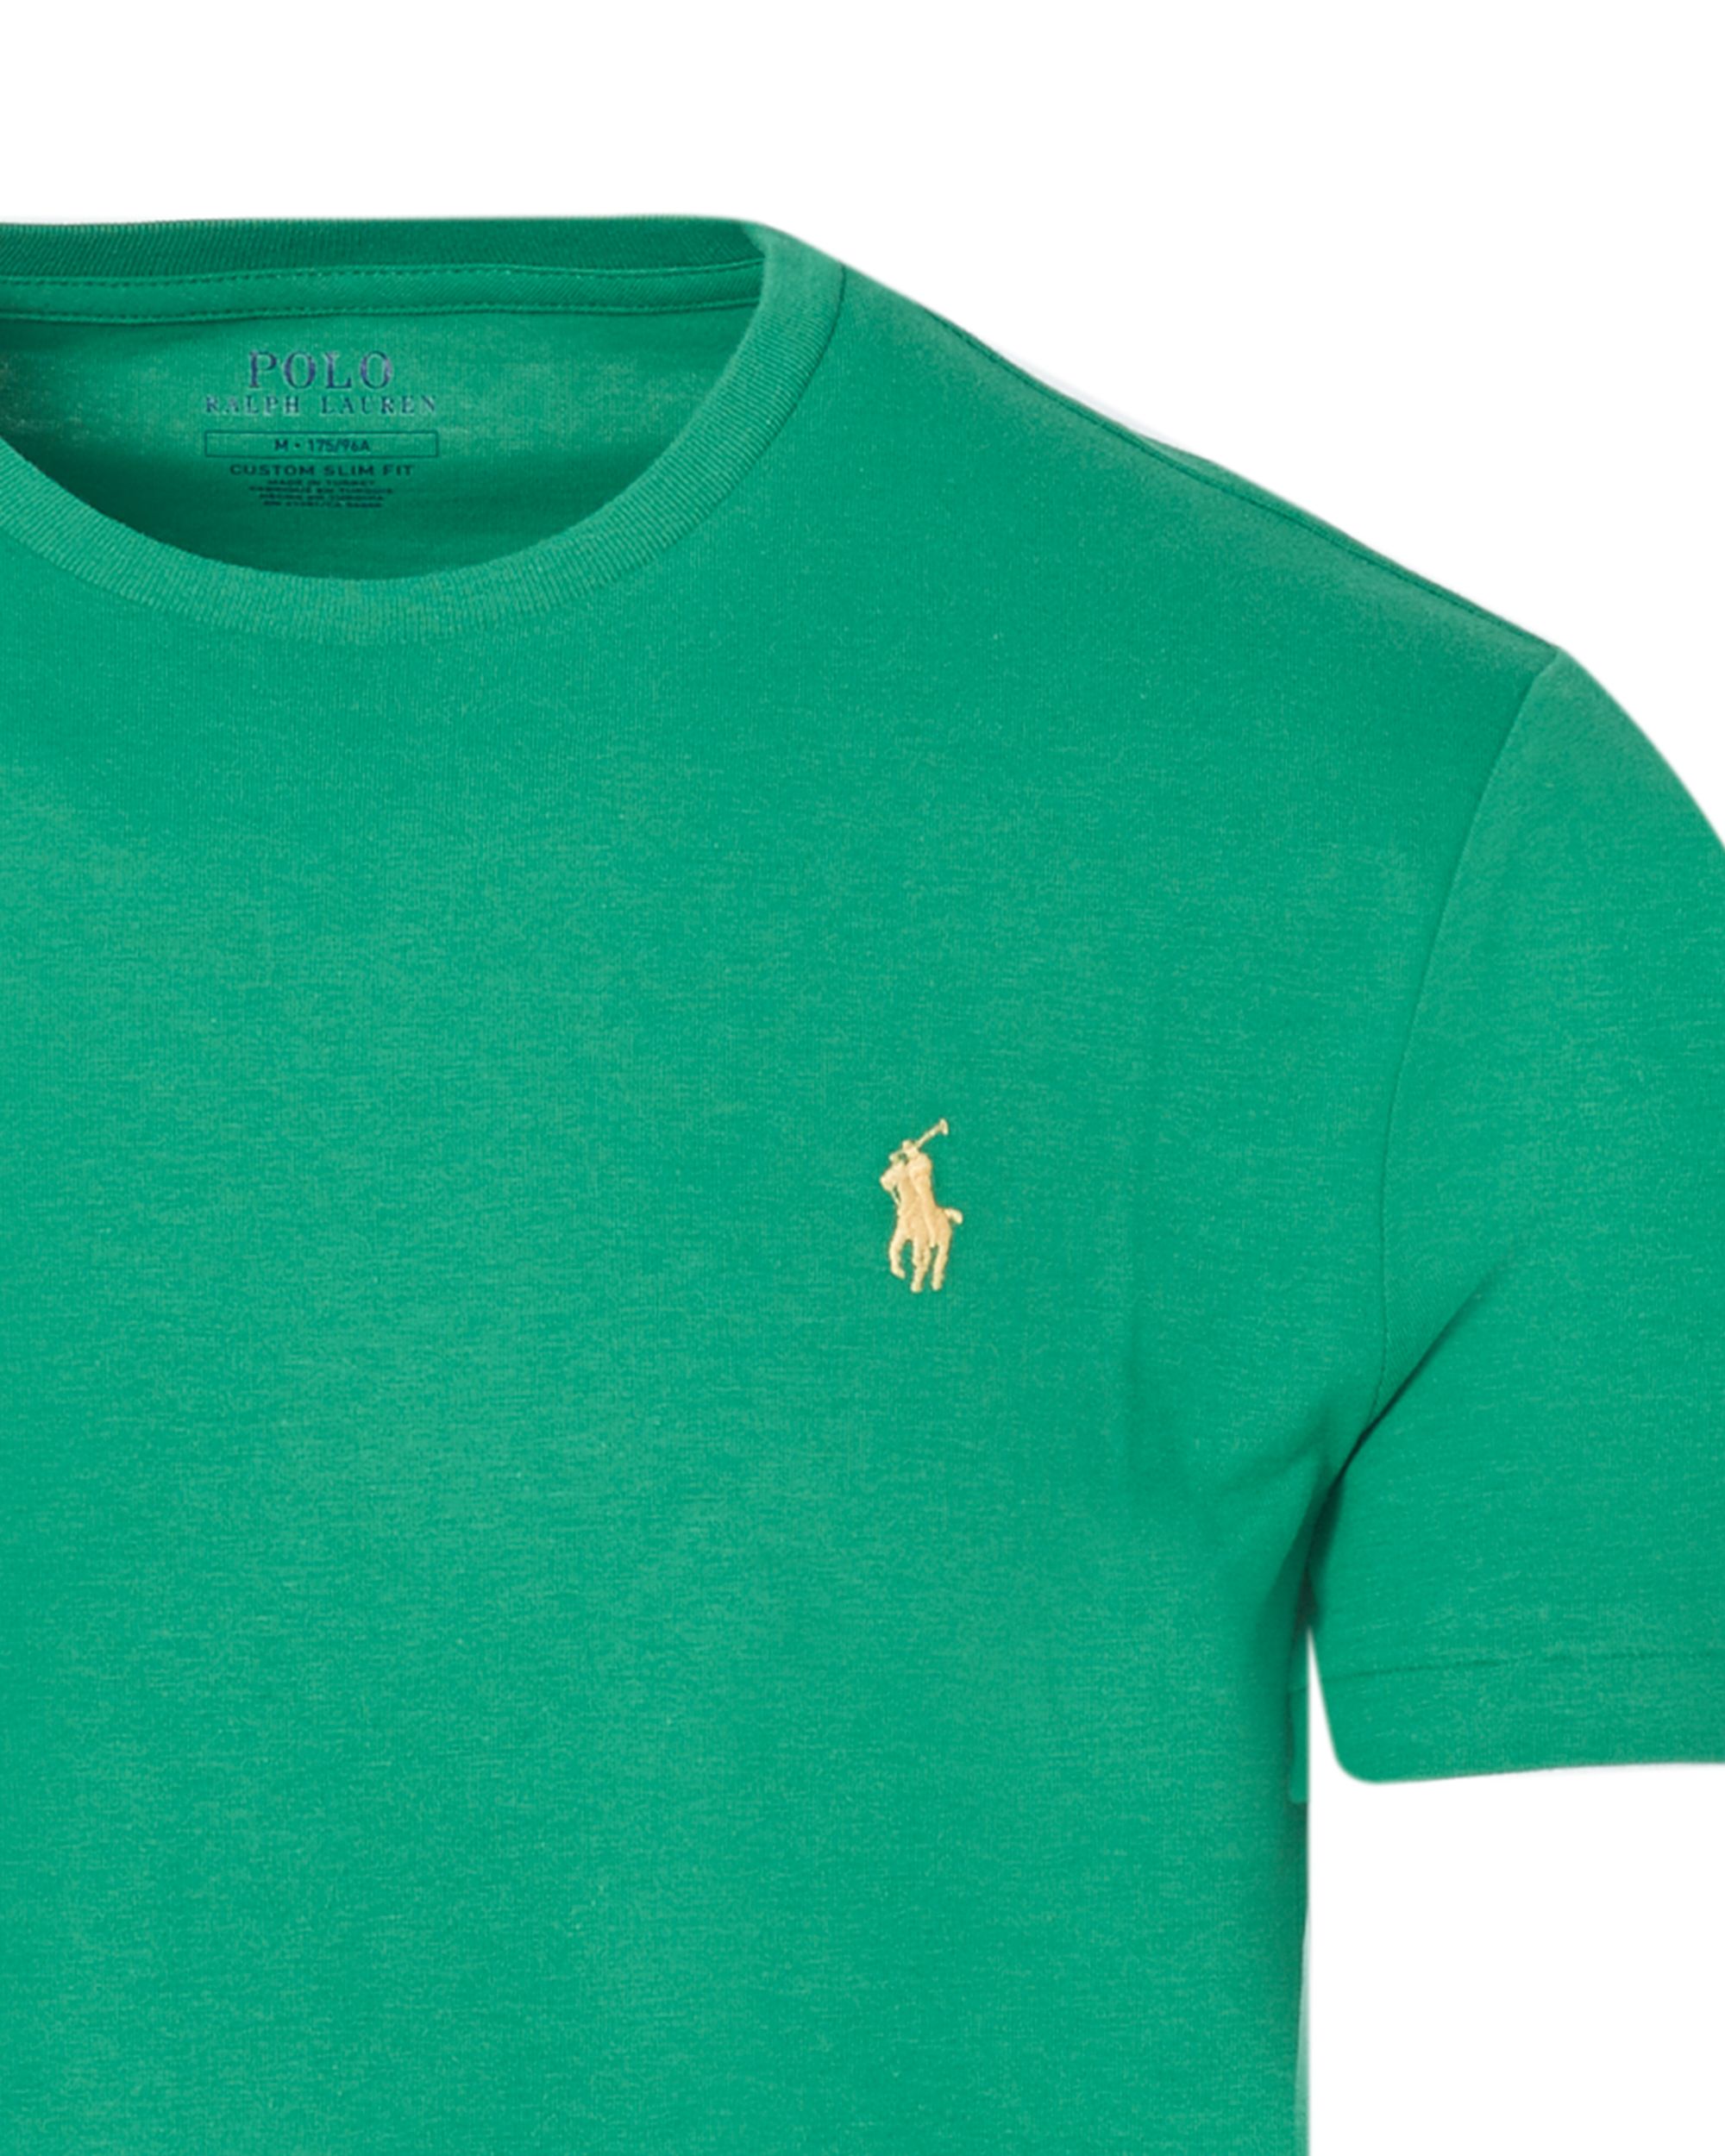 Polo Ralph Lauren T-shirt KM Fel groen 083434-001-L